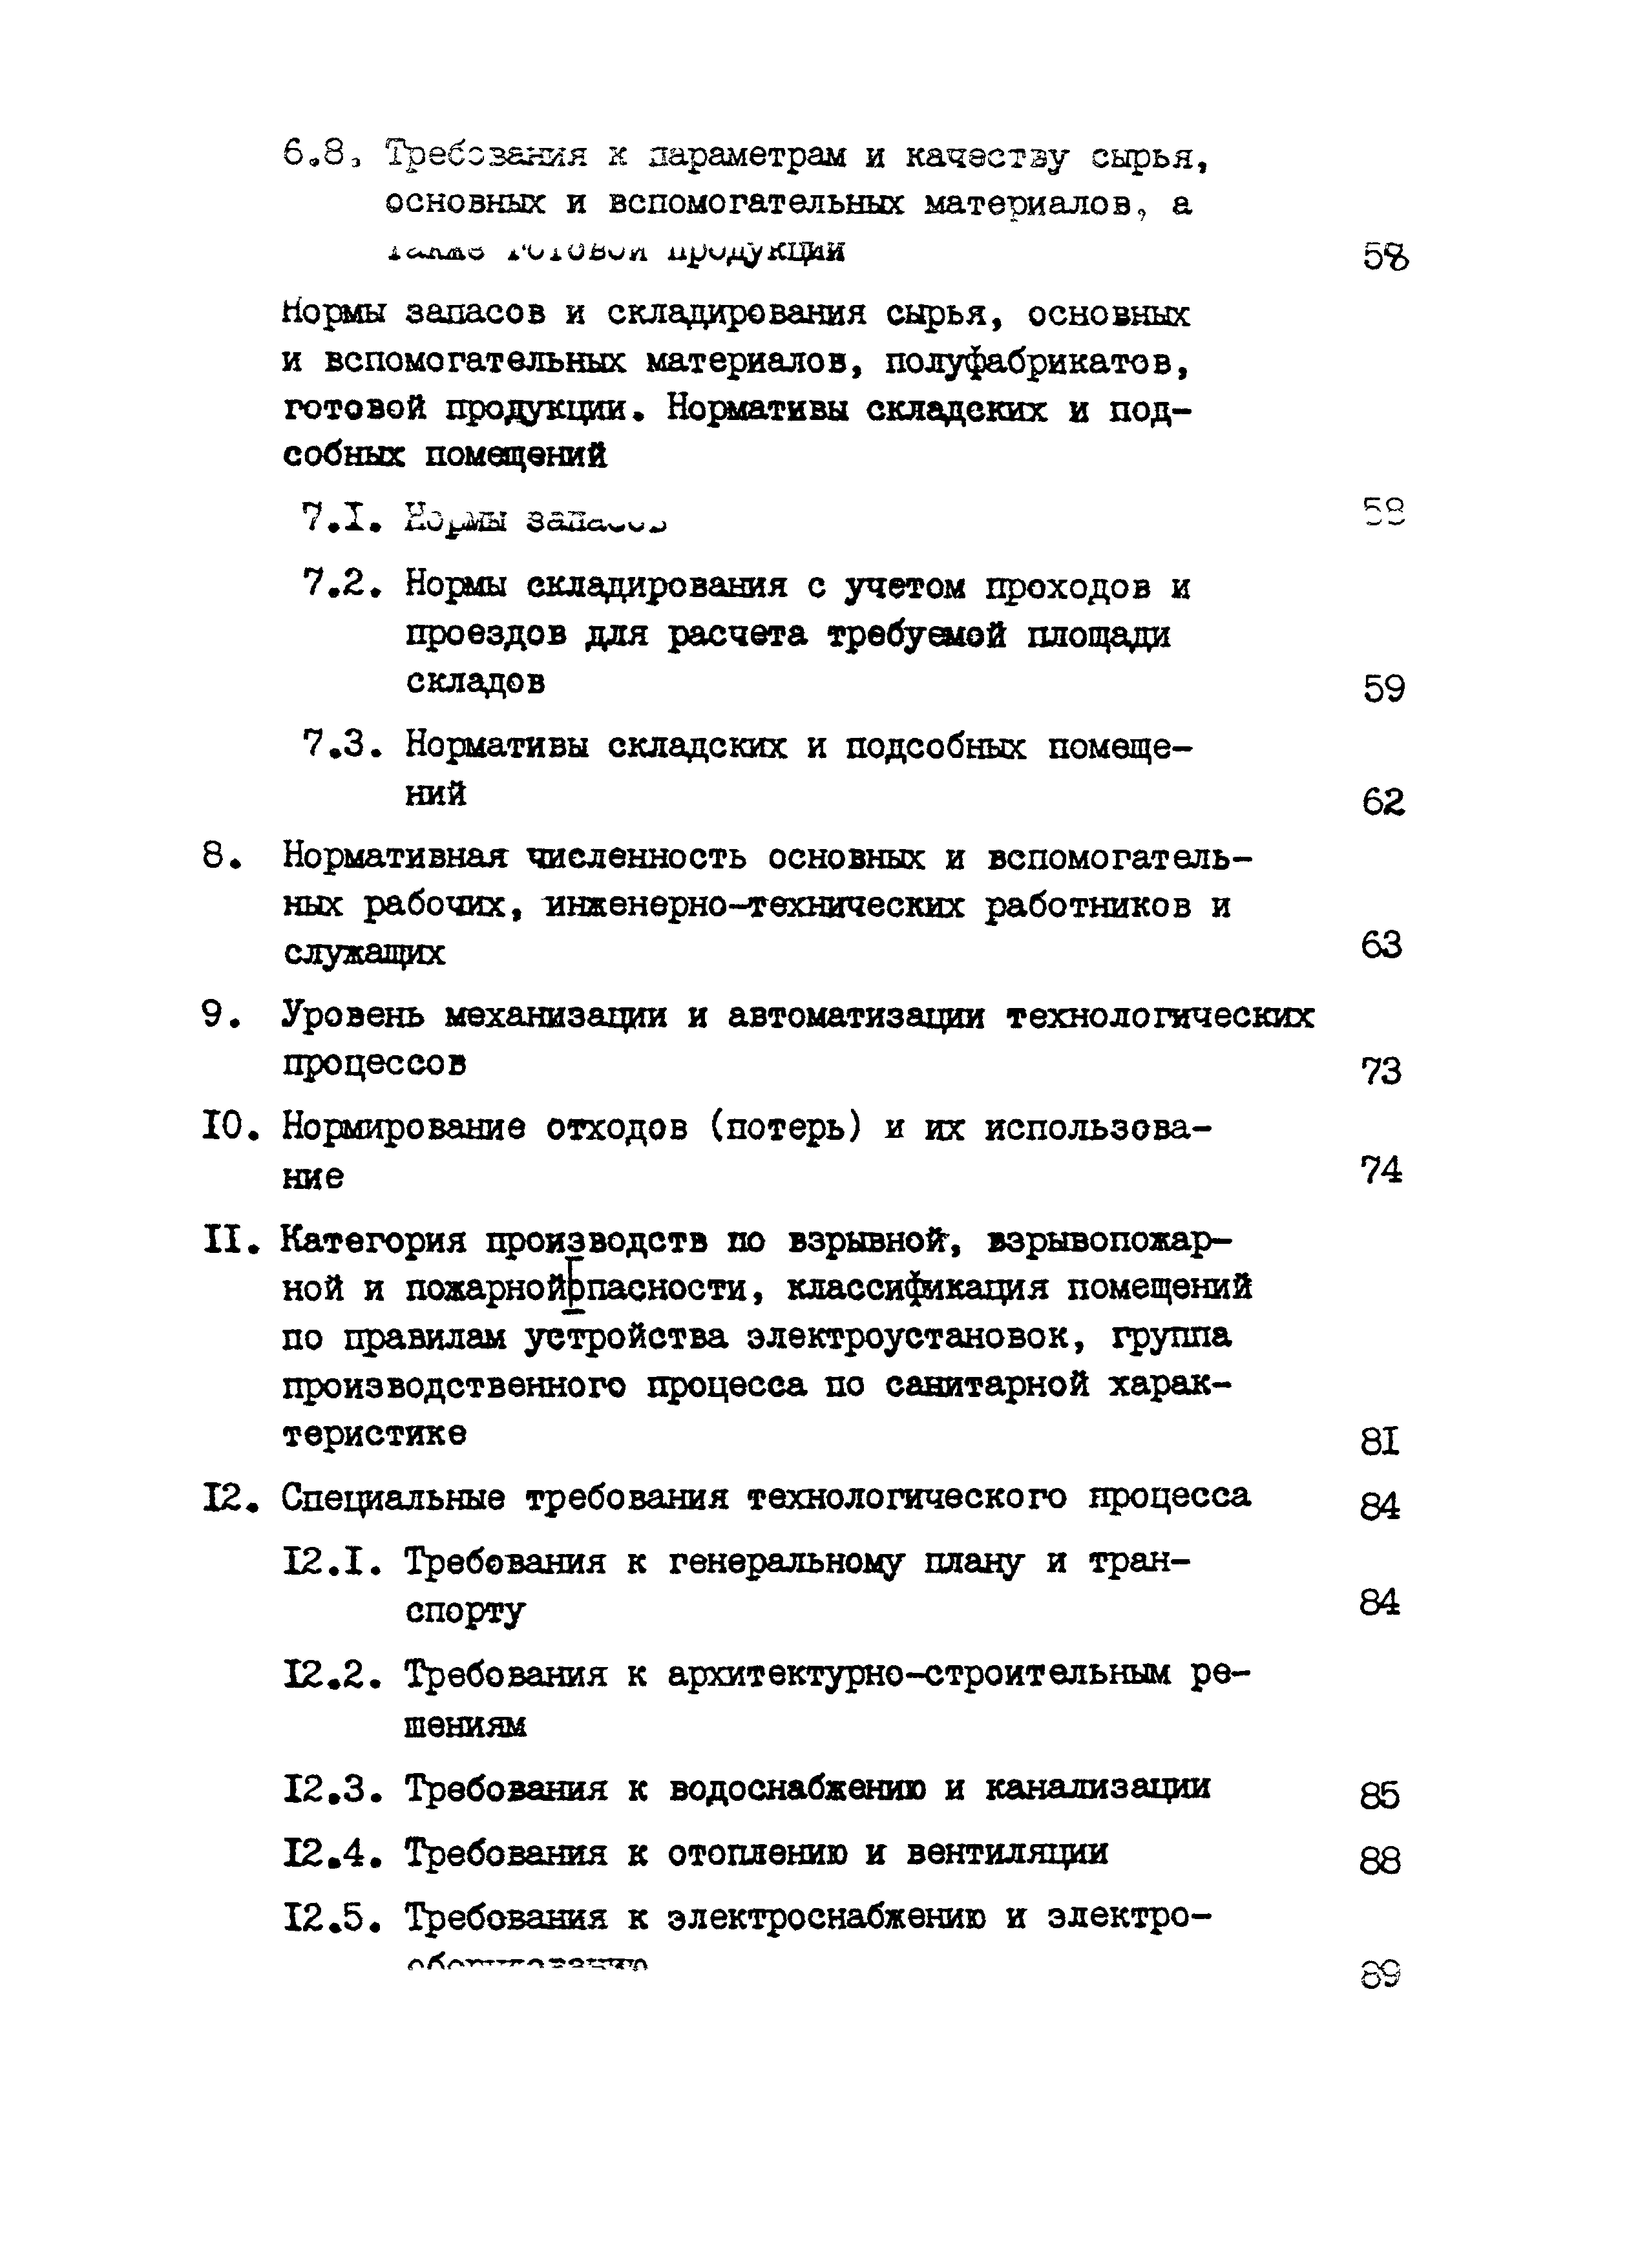 НТП 23-94